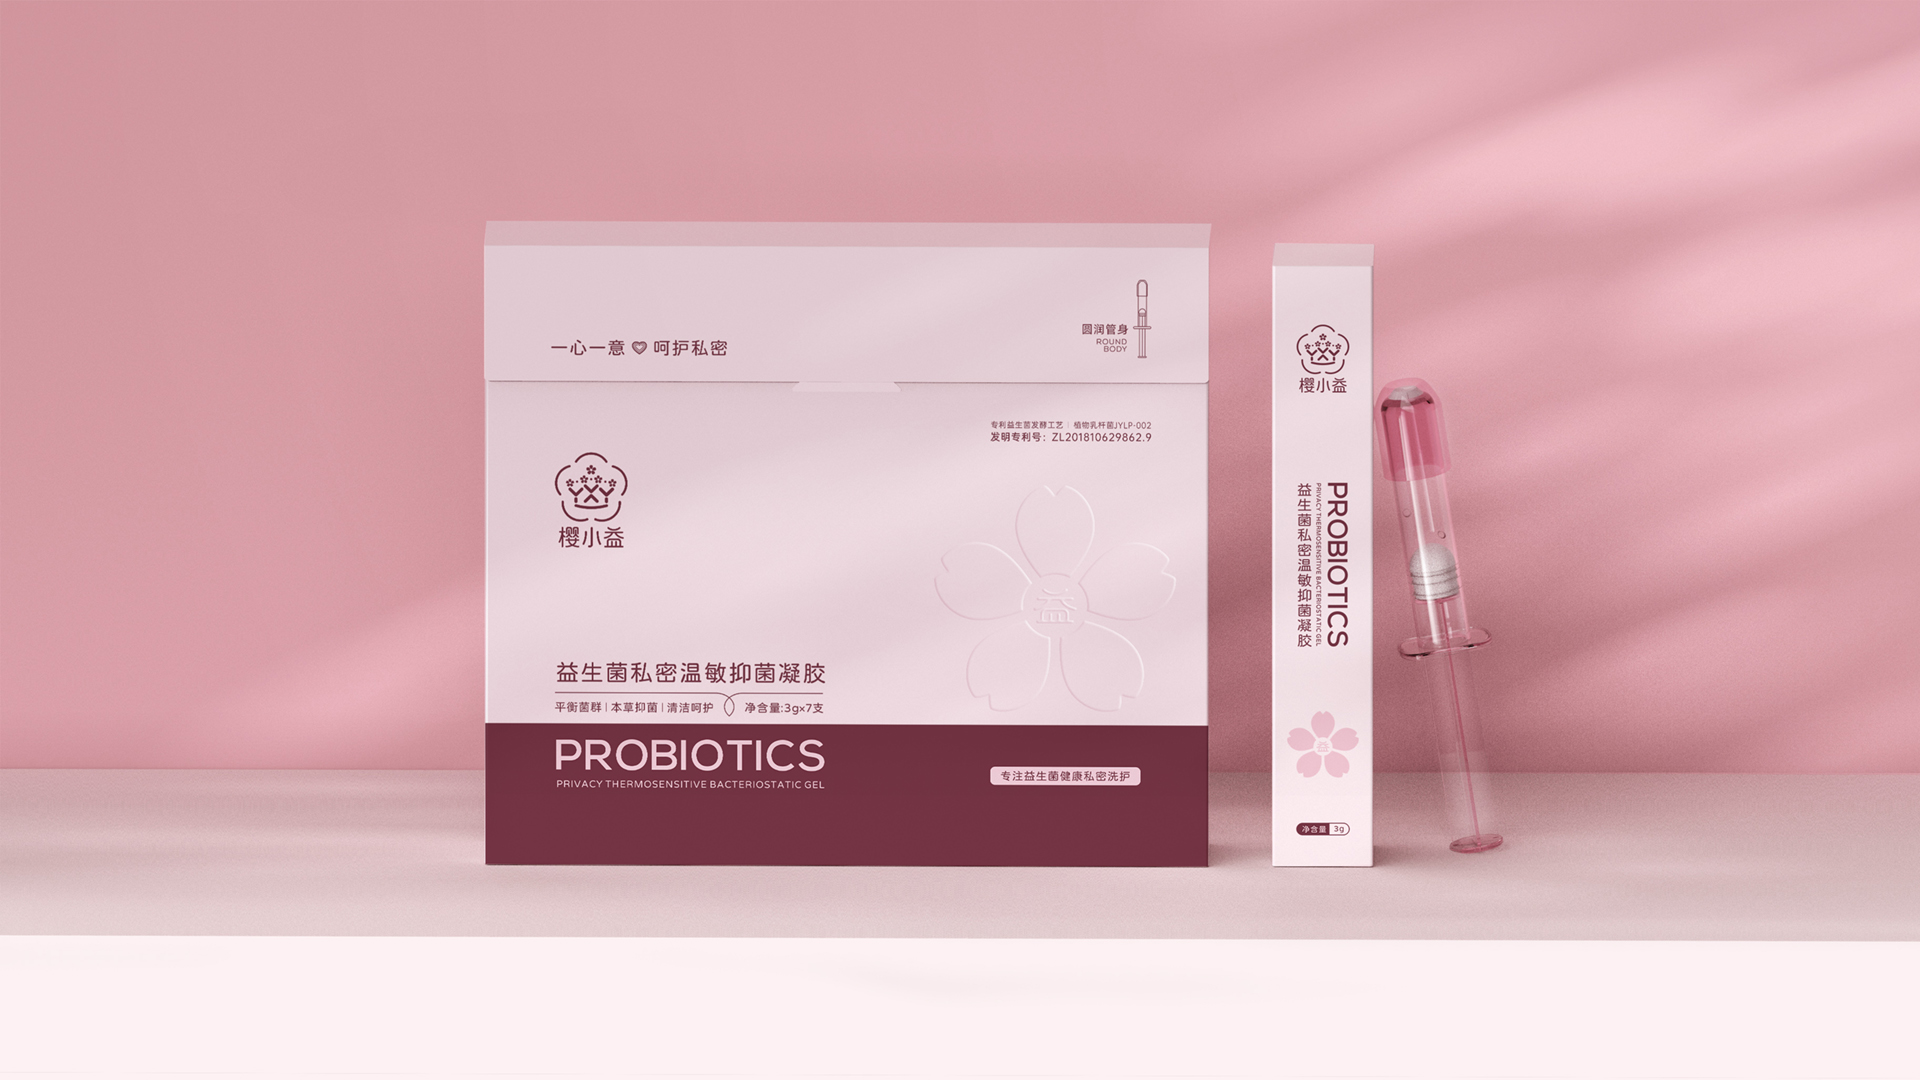 武汉医疗品牌卫生洗护品牌策划设计